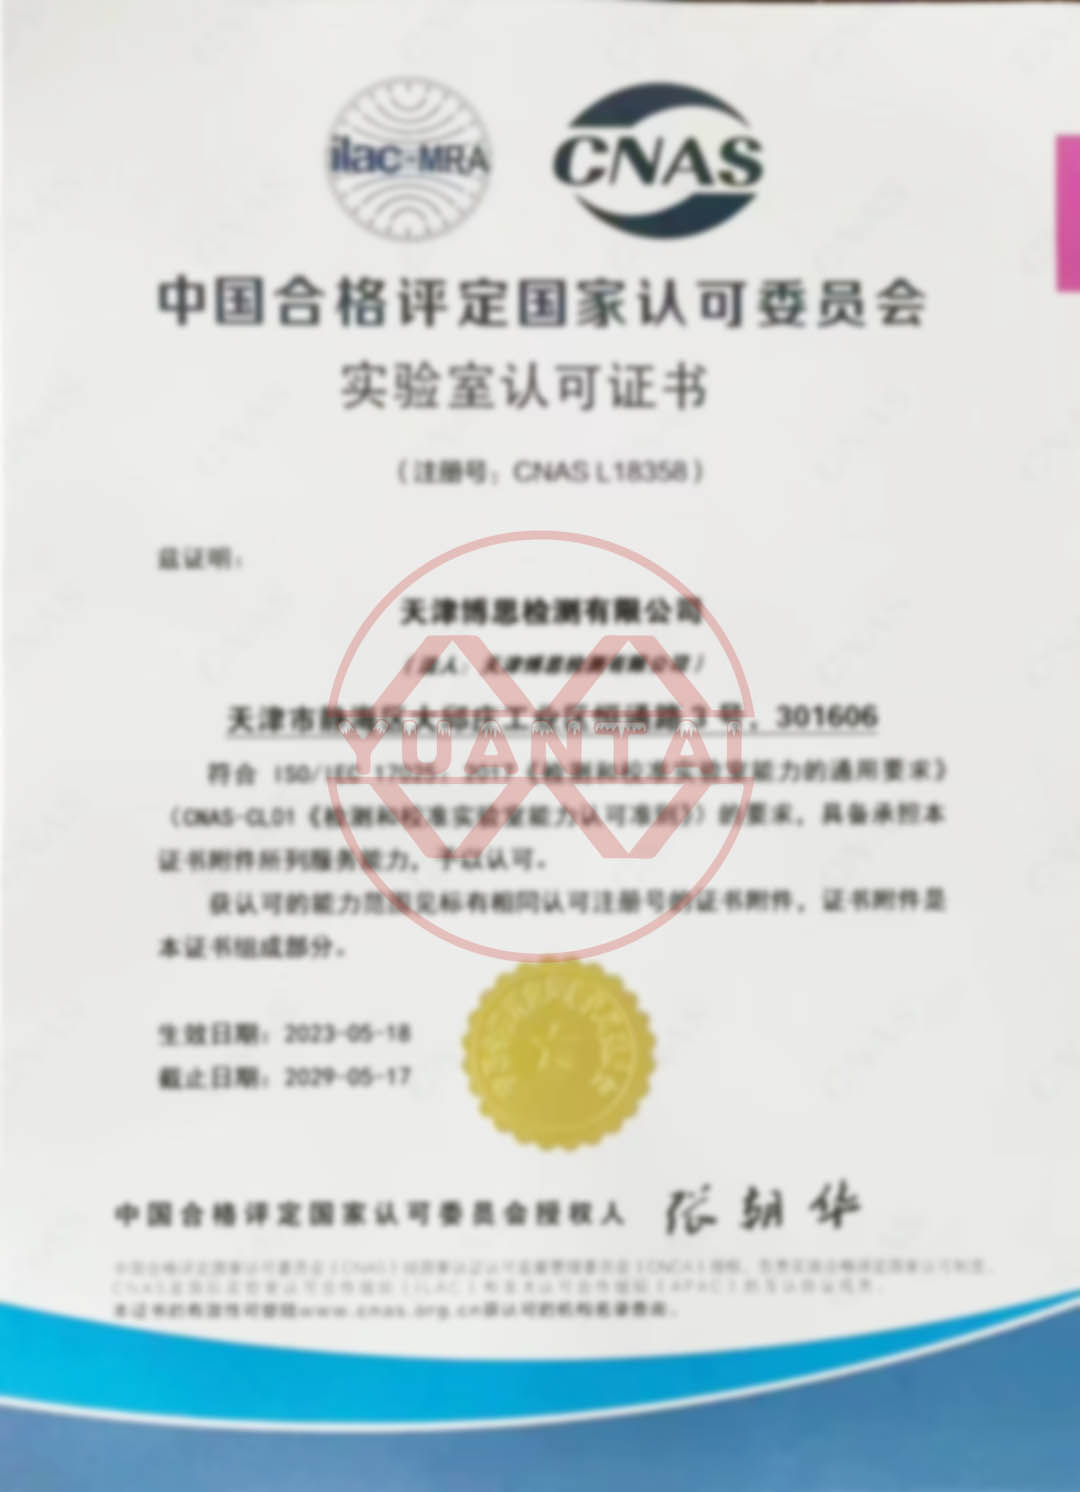 Urime Tianjin Bosi Testing Co., Ltd., një degë e Yuantai Derun Steel Pipe Group, për kalimin e certifikimit CNAS.